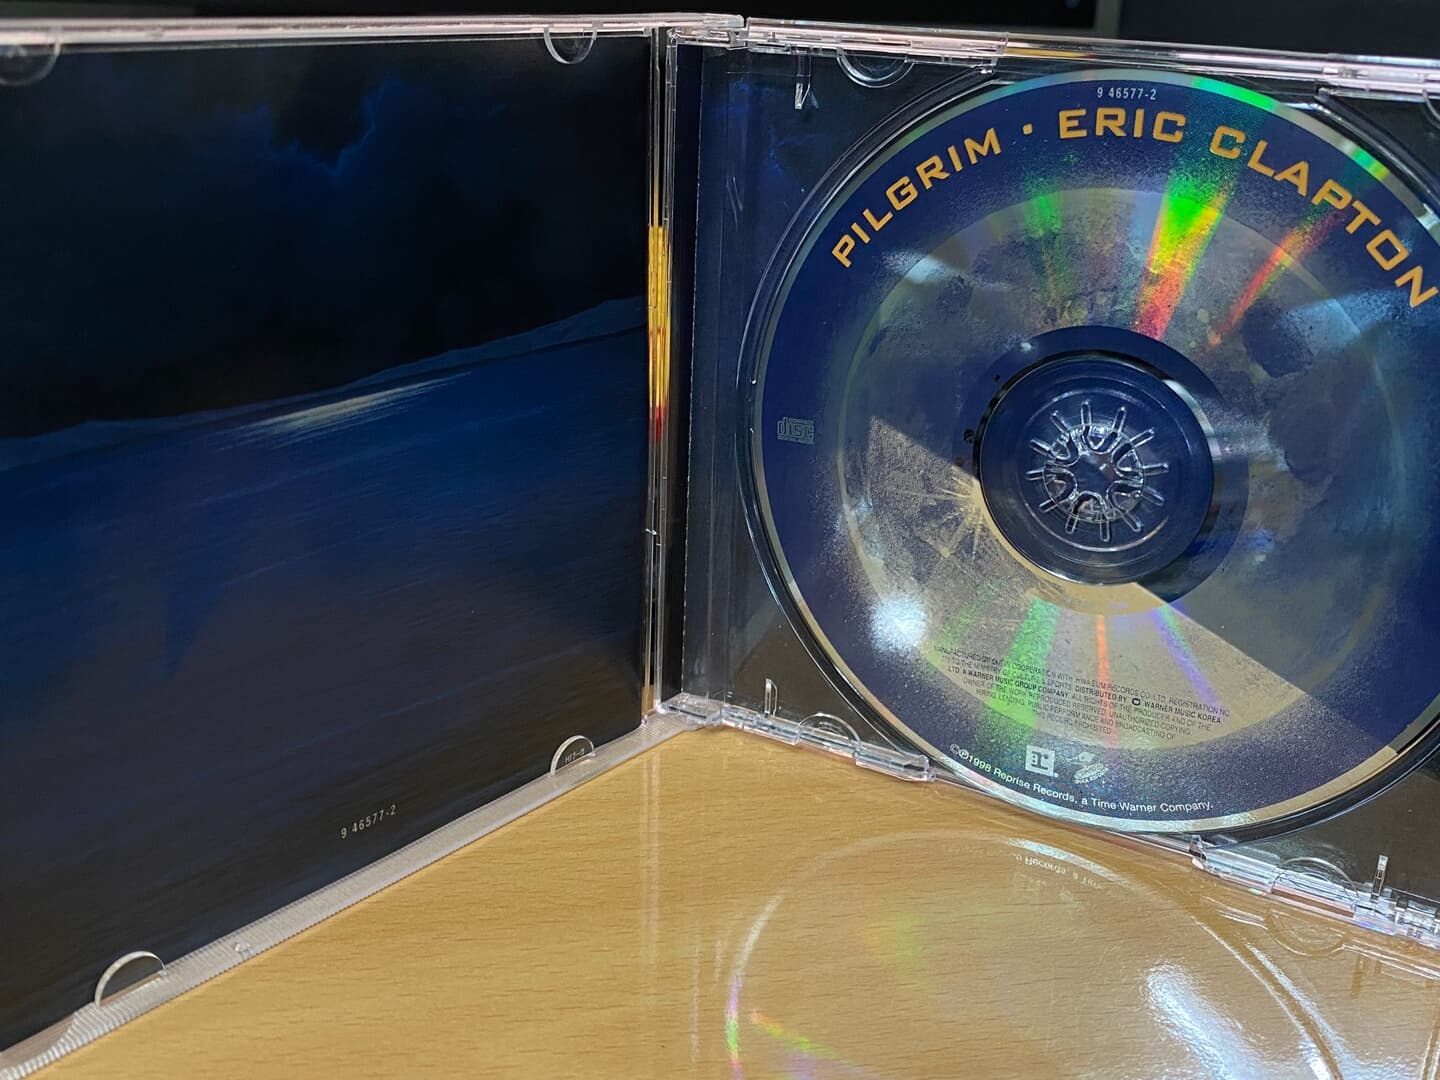 에릭 클랩튼 - Eric Clapton - Pilgrim